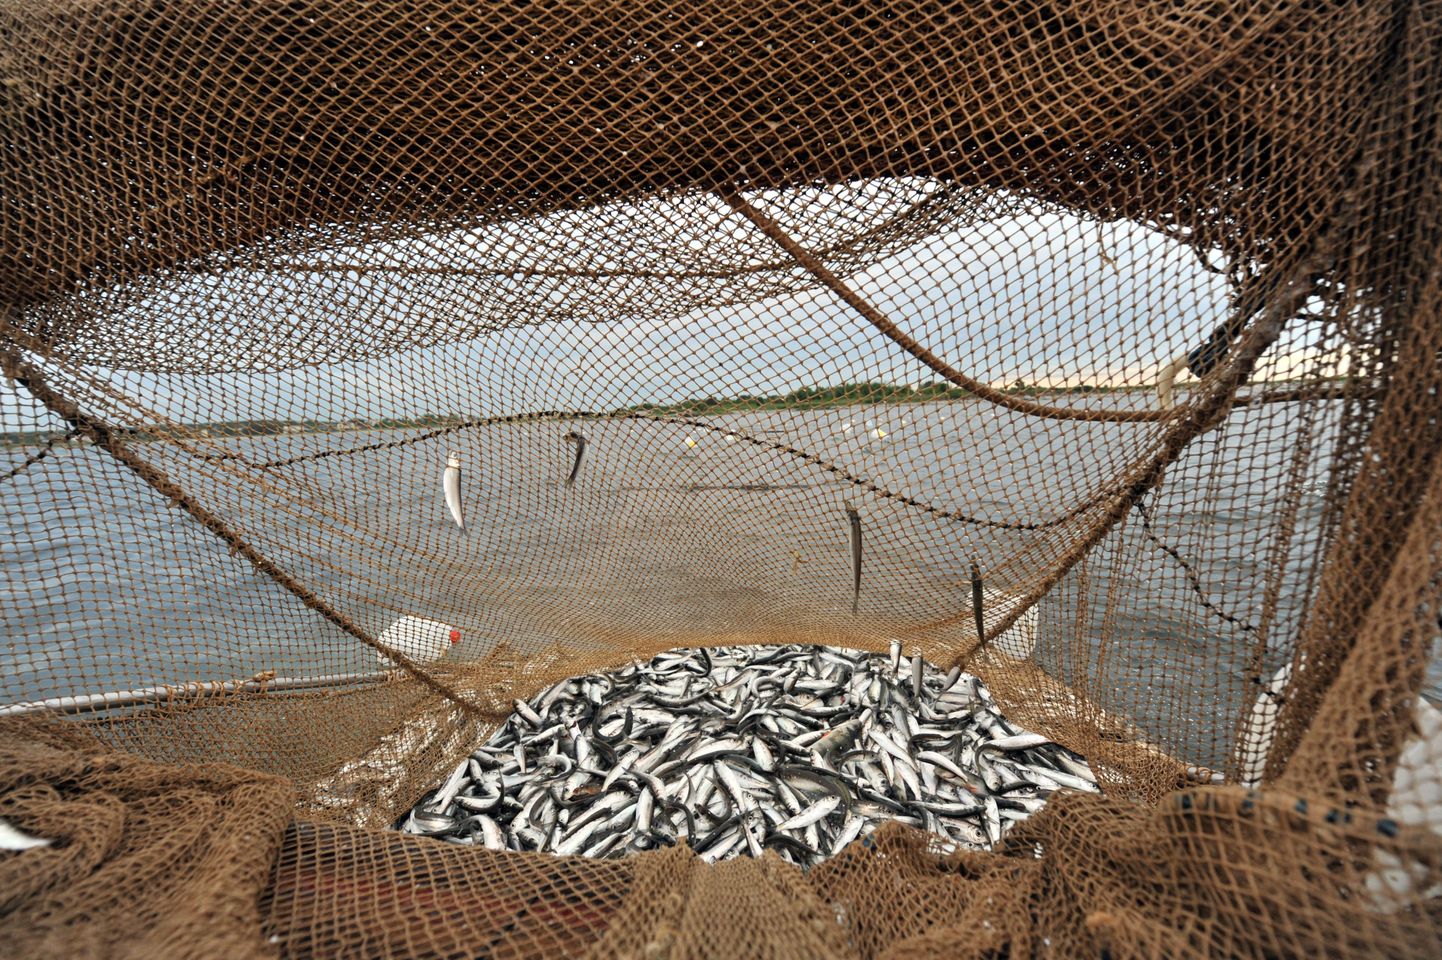 Venemaa karmistab kontrolli Saksamaalt, Poolast ja Baltimaadest imporditava kala üles, sest kahtlustatakse, et kahtlusega, et imporditav kala võib sisaldada dioksiine.